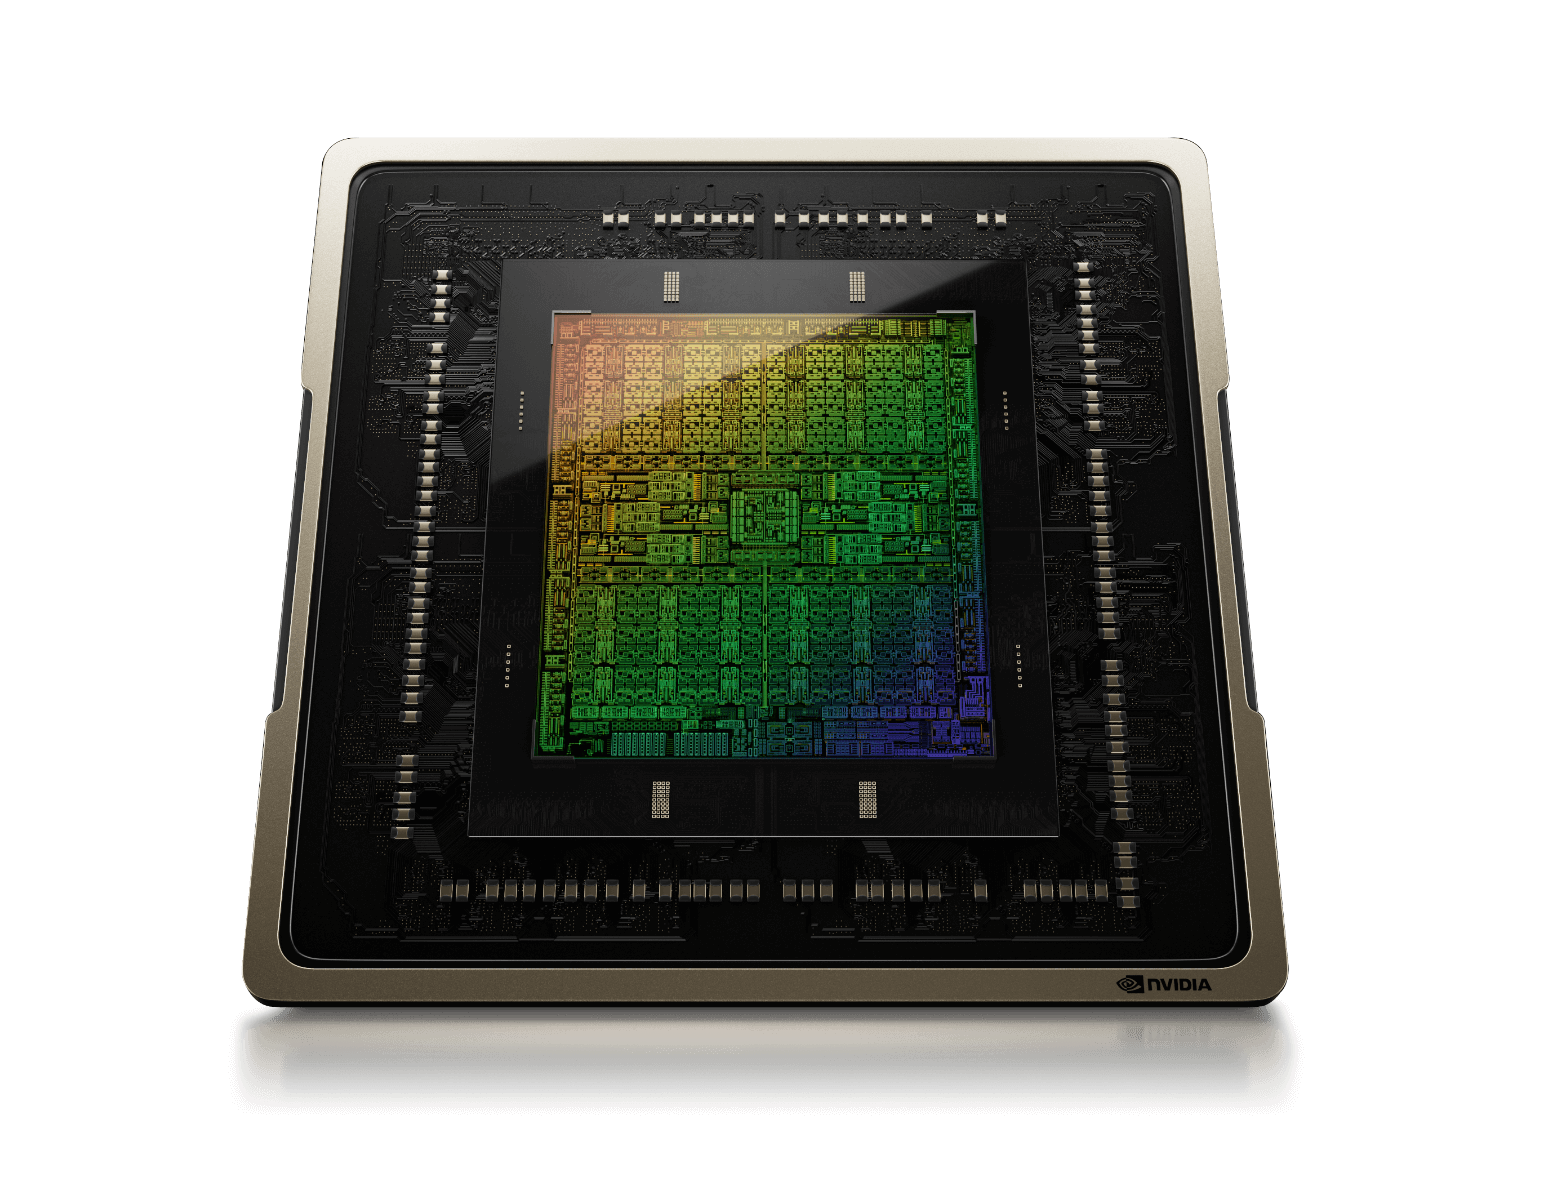 ASUS GeForce PROART RTX 4060 OC 8GB